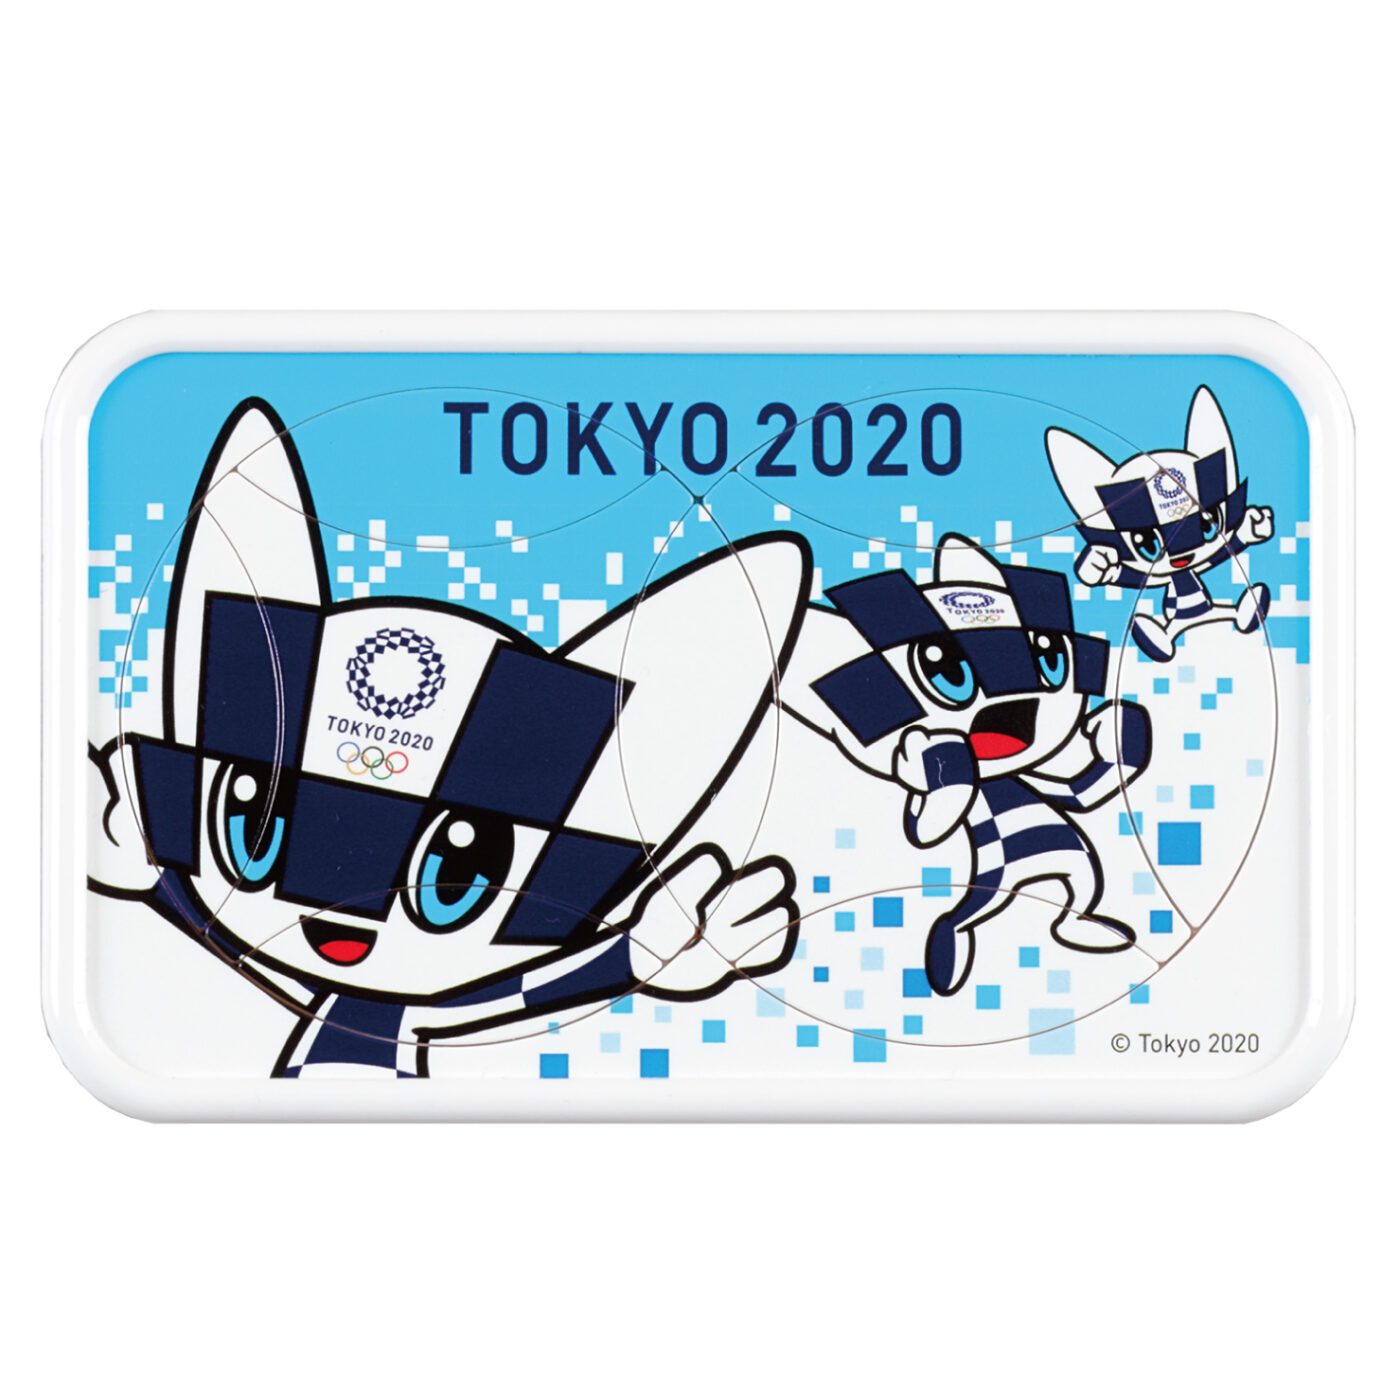 東京2020 オリンピックマスコット ミライトワ 回転絵合わせパズル02の商品画像1